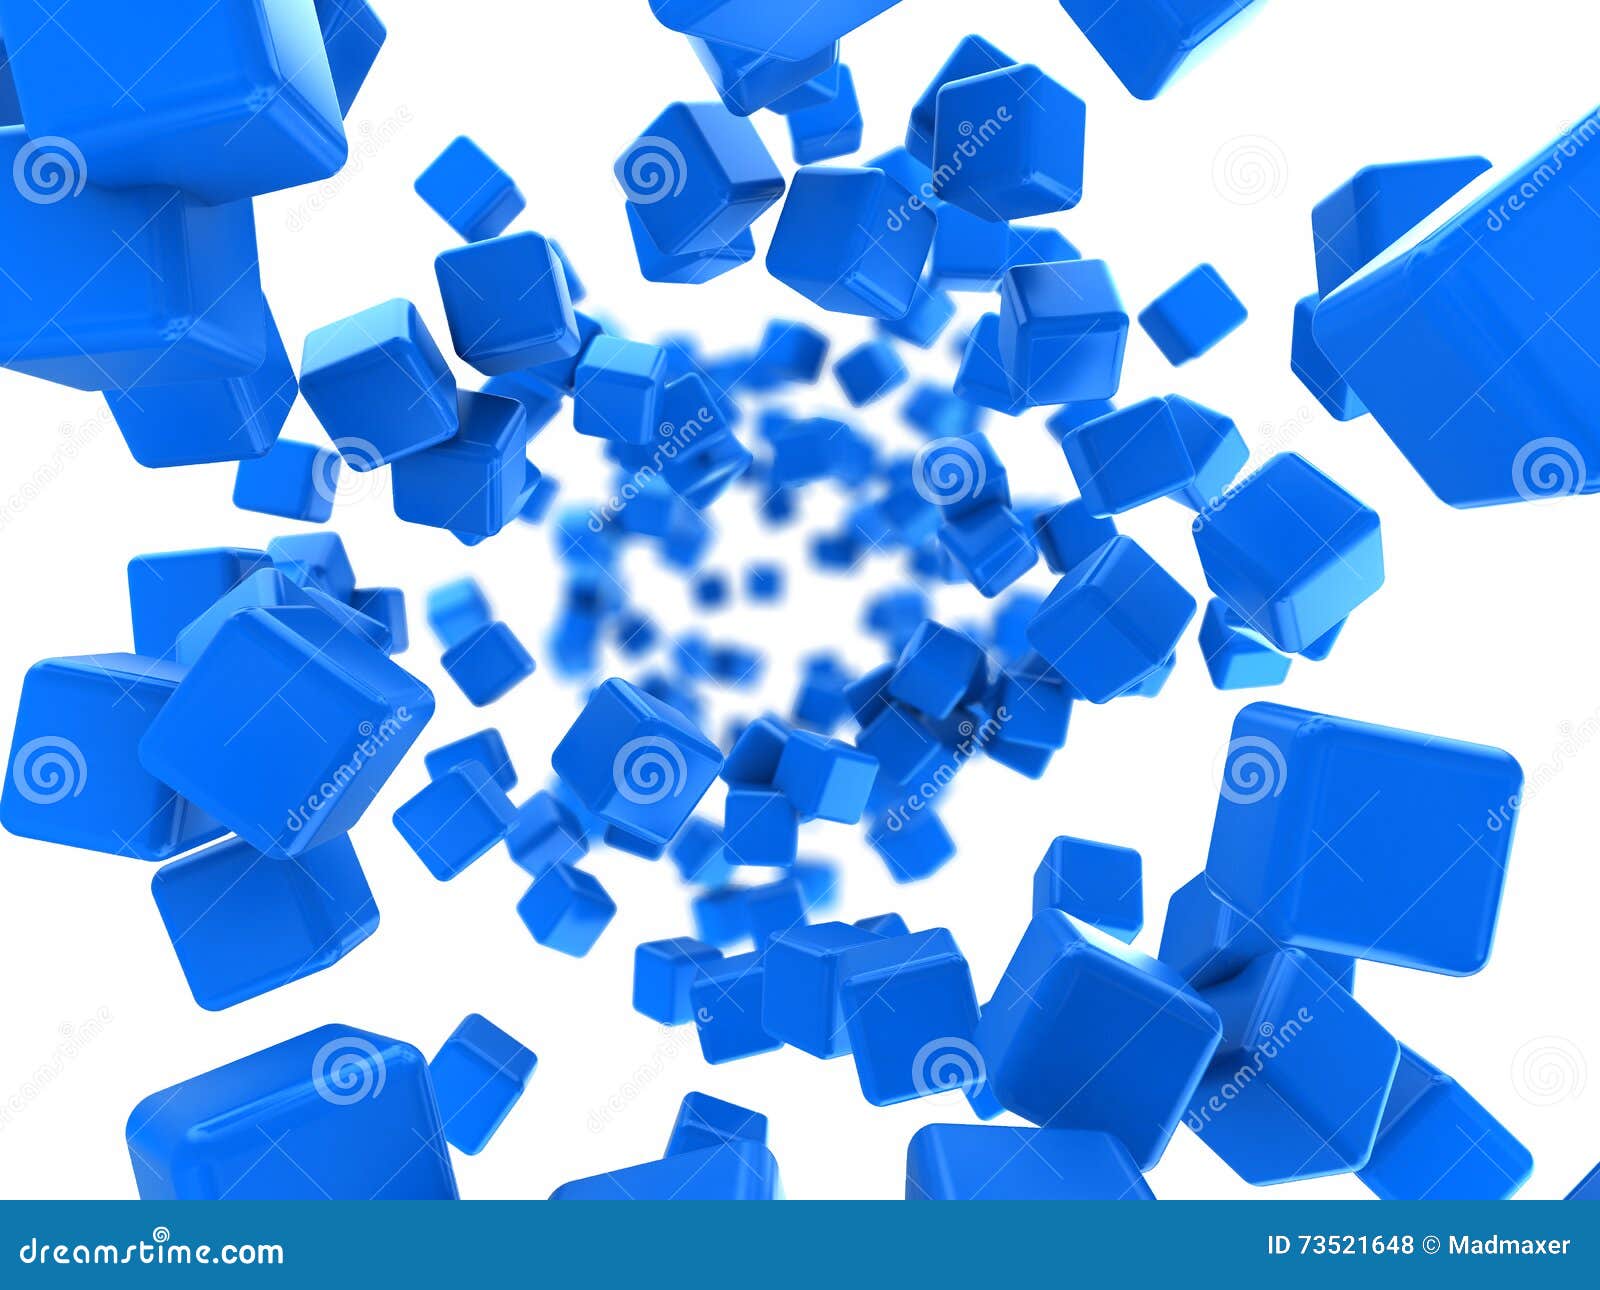 Cube le fond. L'illustration 3d abstraite des cubes bleus coulent fond